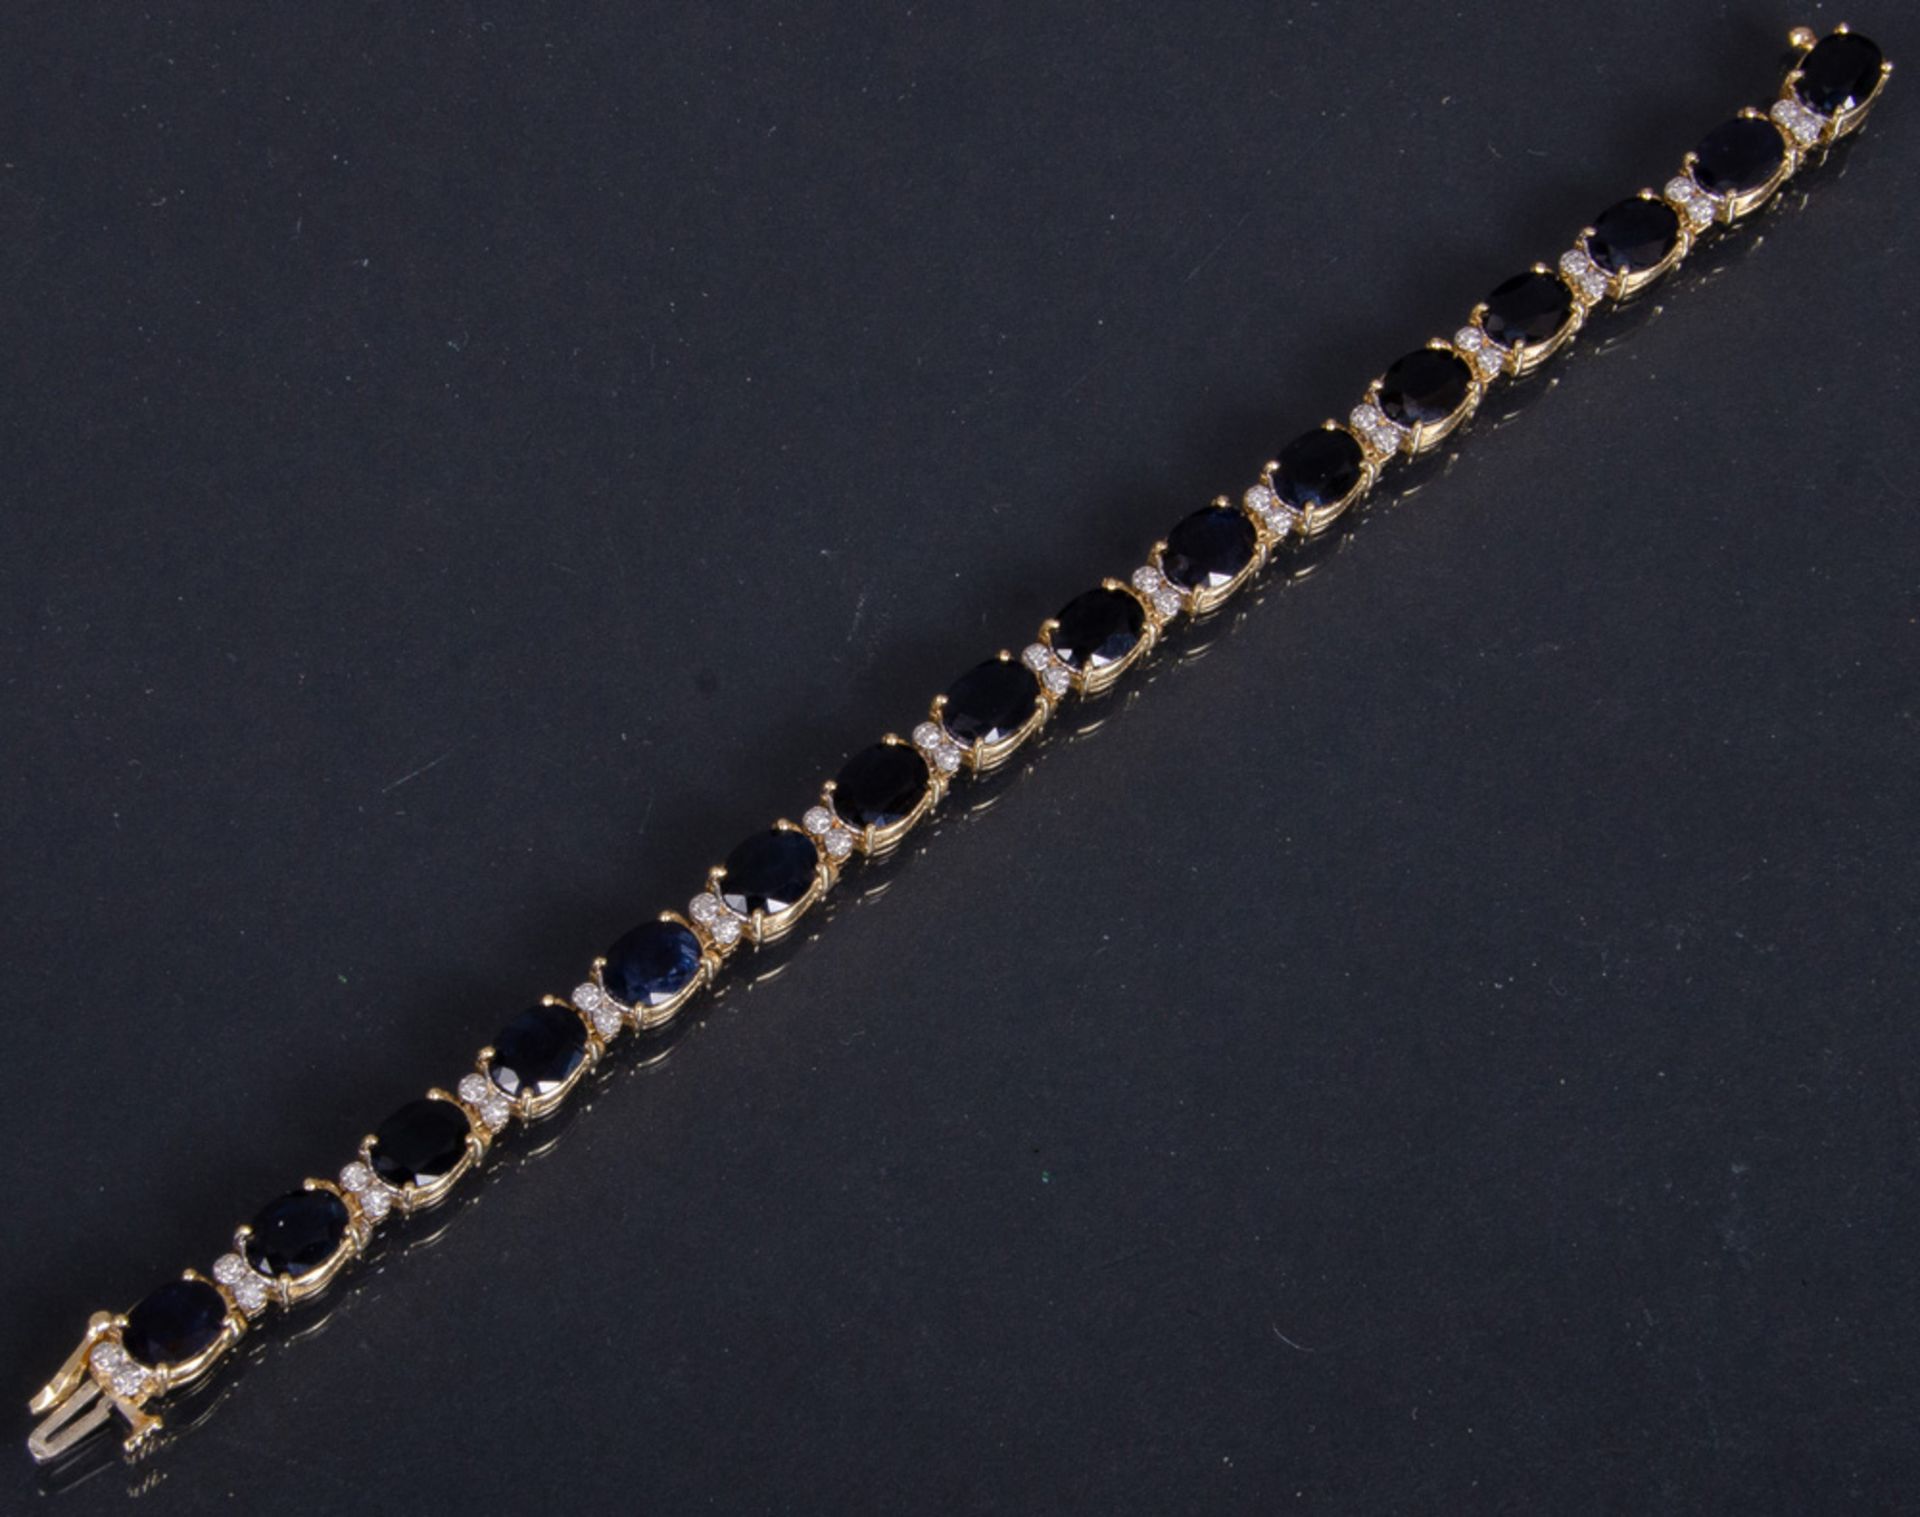 Armband, GG/WG, gestempelt 585/-, ausgefasst mit 16 sehr dunklen - fast schwarzen - ovalen